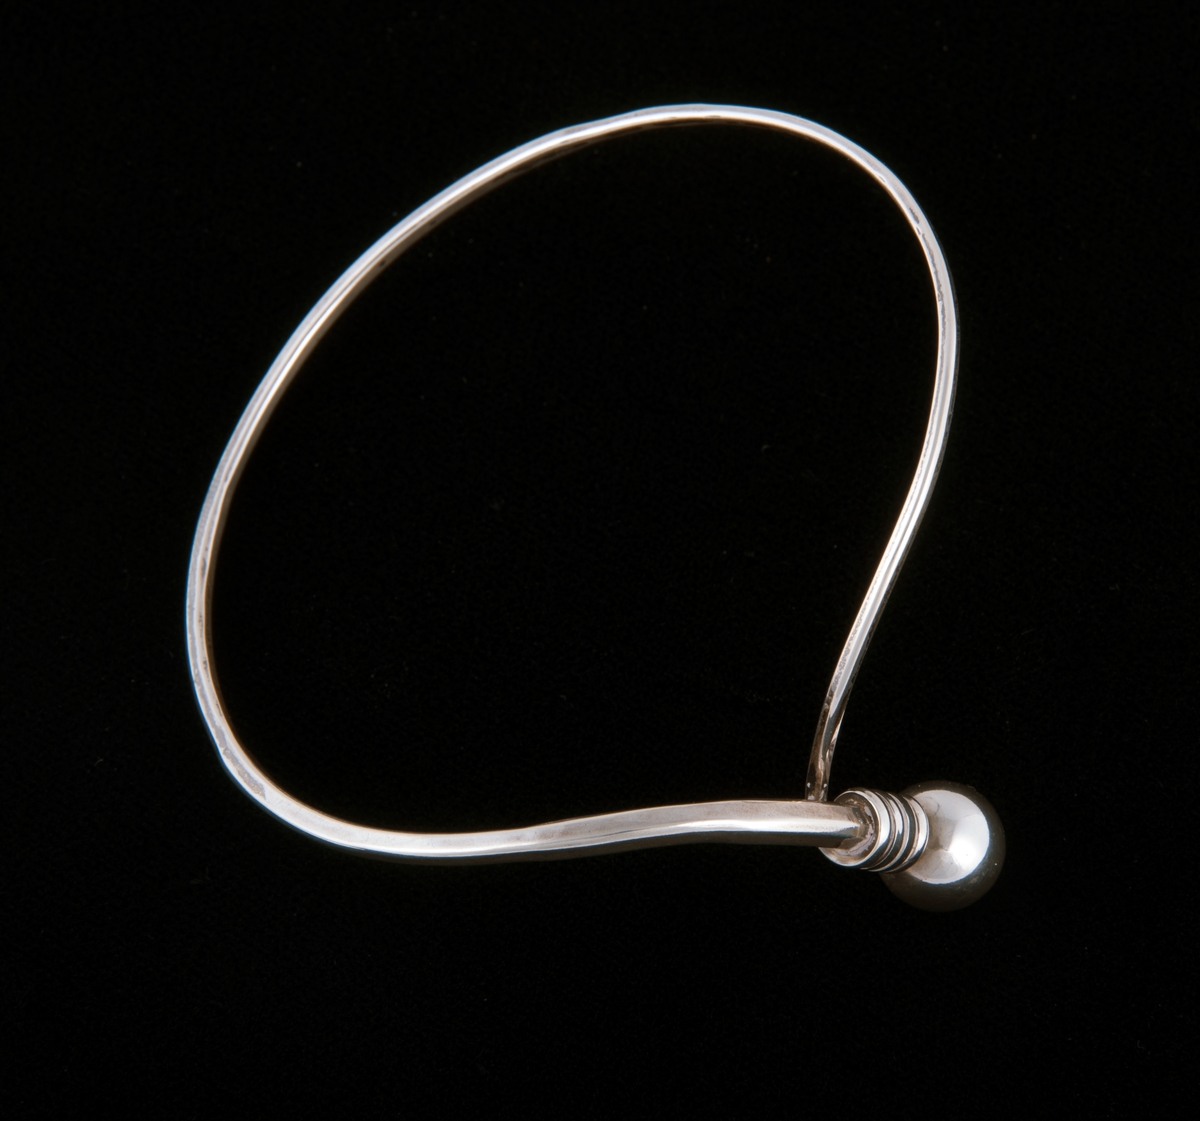 Består av en sølvtråd som avtar i bredde fra ende til annen. Endene forenes til en ring som markeres med en sølvkule. Kulen og endene er bøyd ut i vinkel fra armringen. 